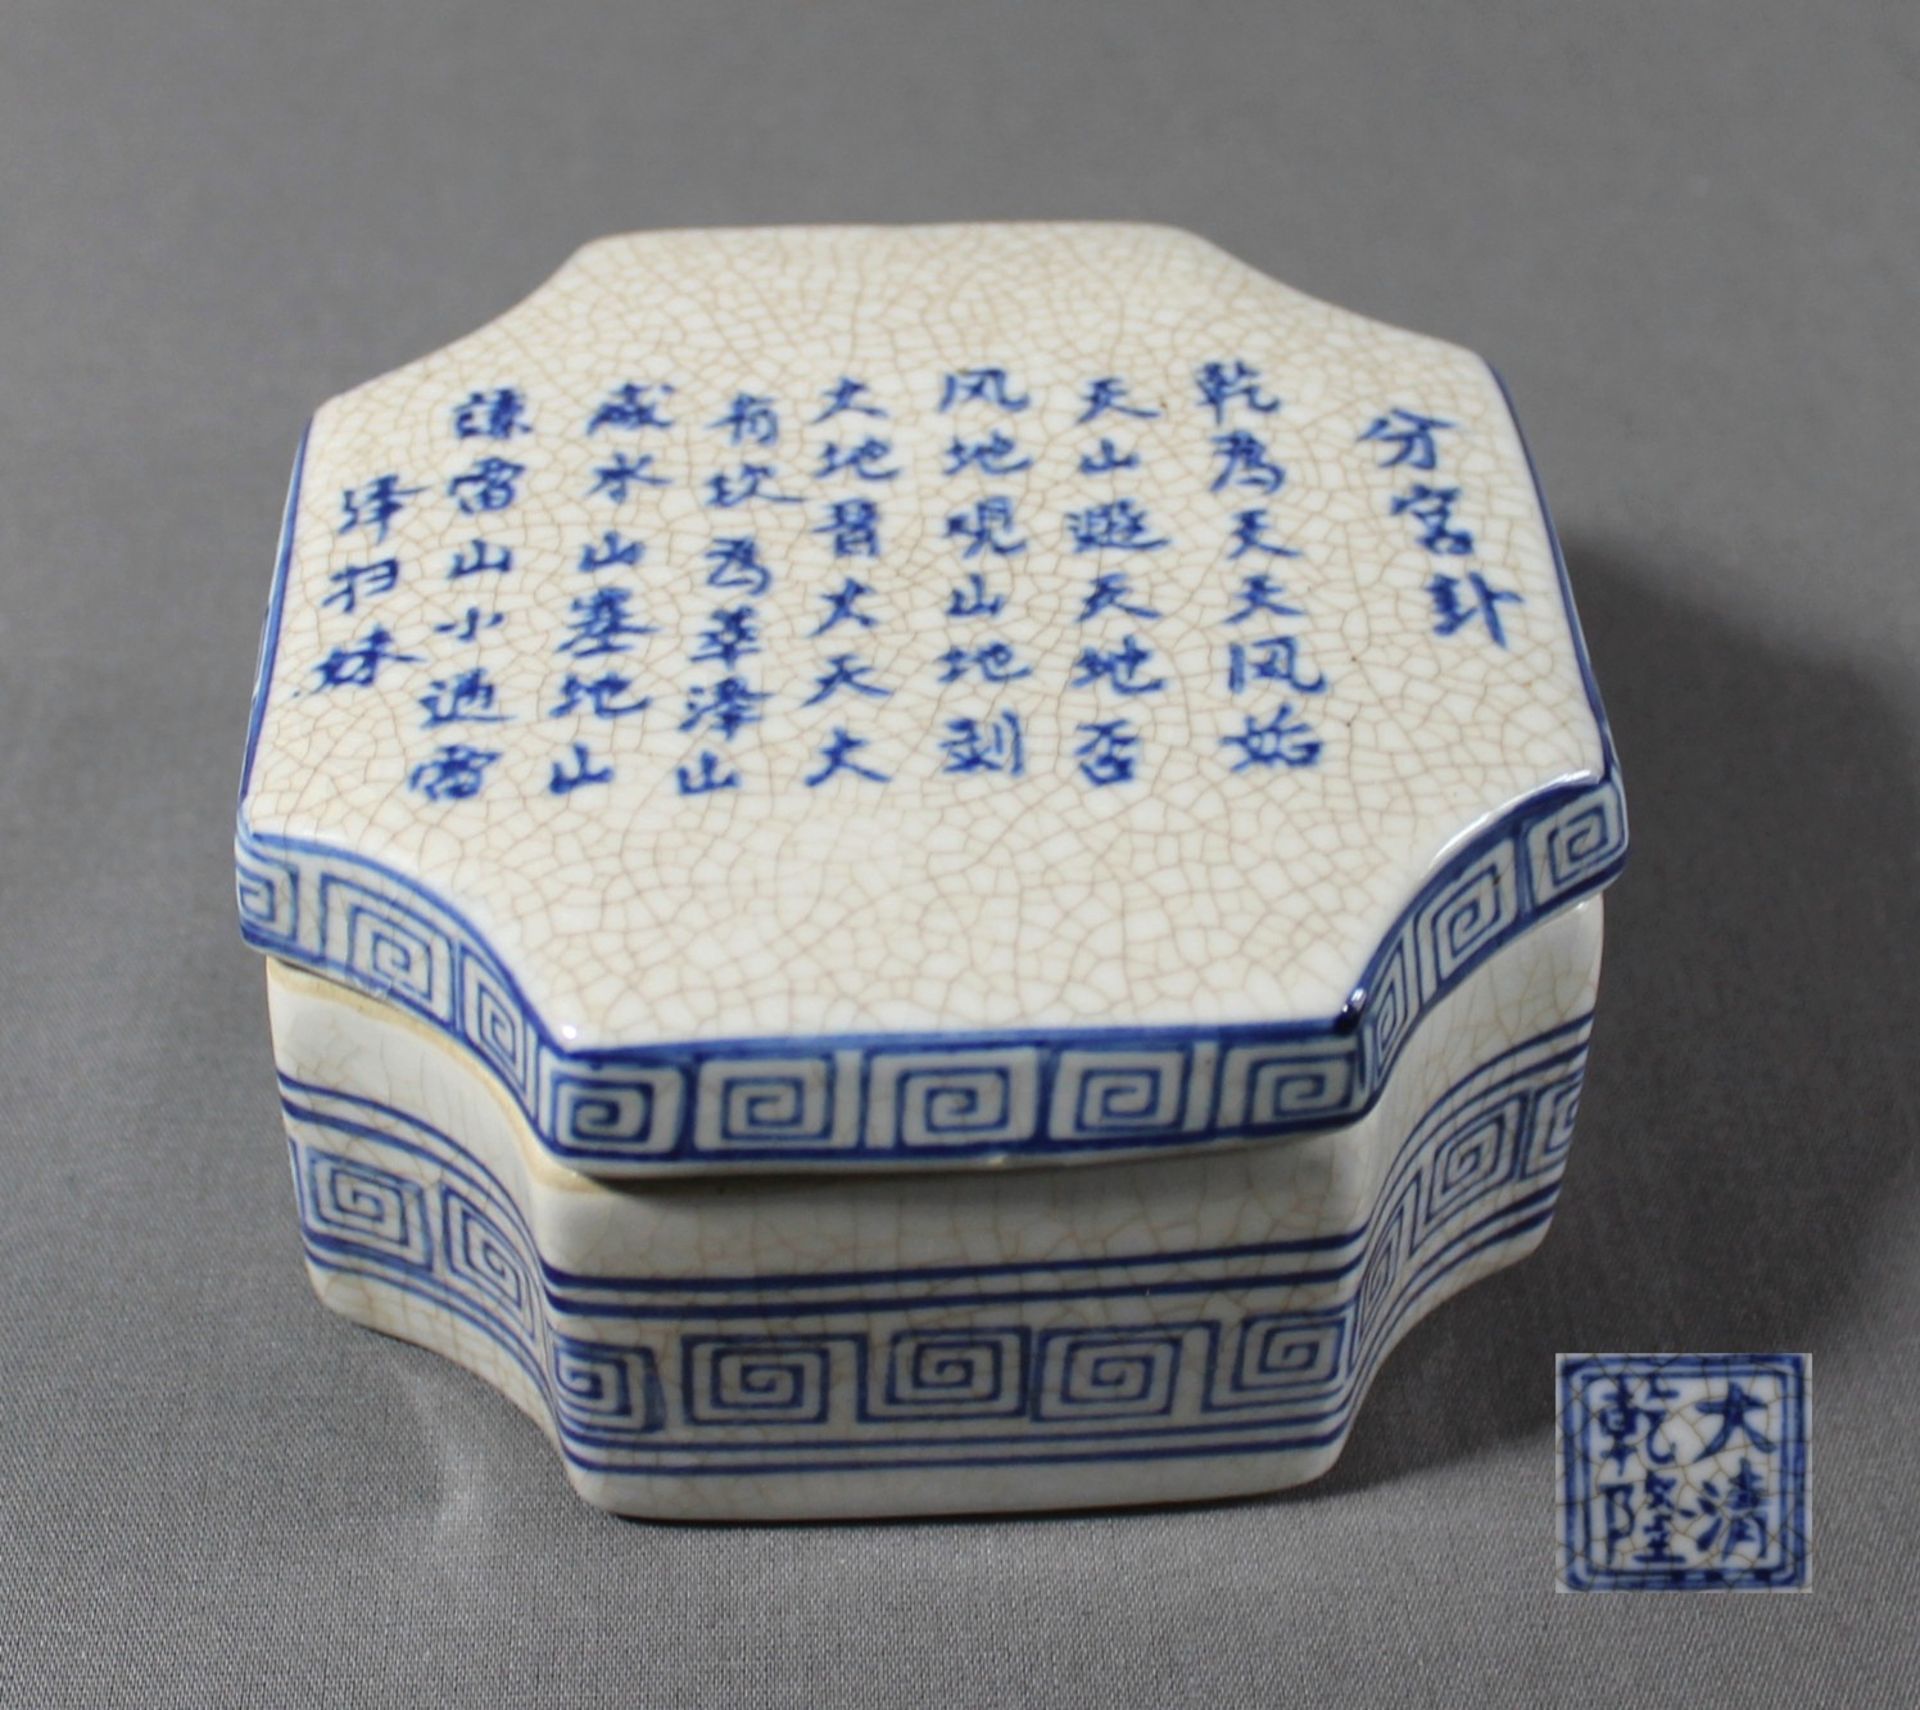 1 Deckeldose Keramik, 8-eckig, Deckel mit asiatischen Schriftzeichen, Boden gemarkt, ca. 7cm x 12,